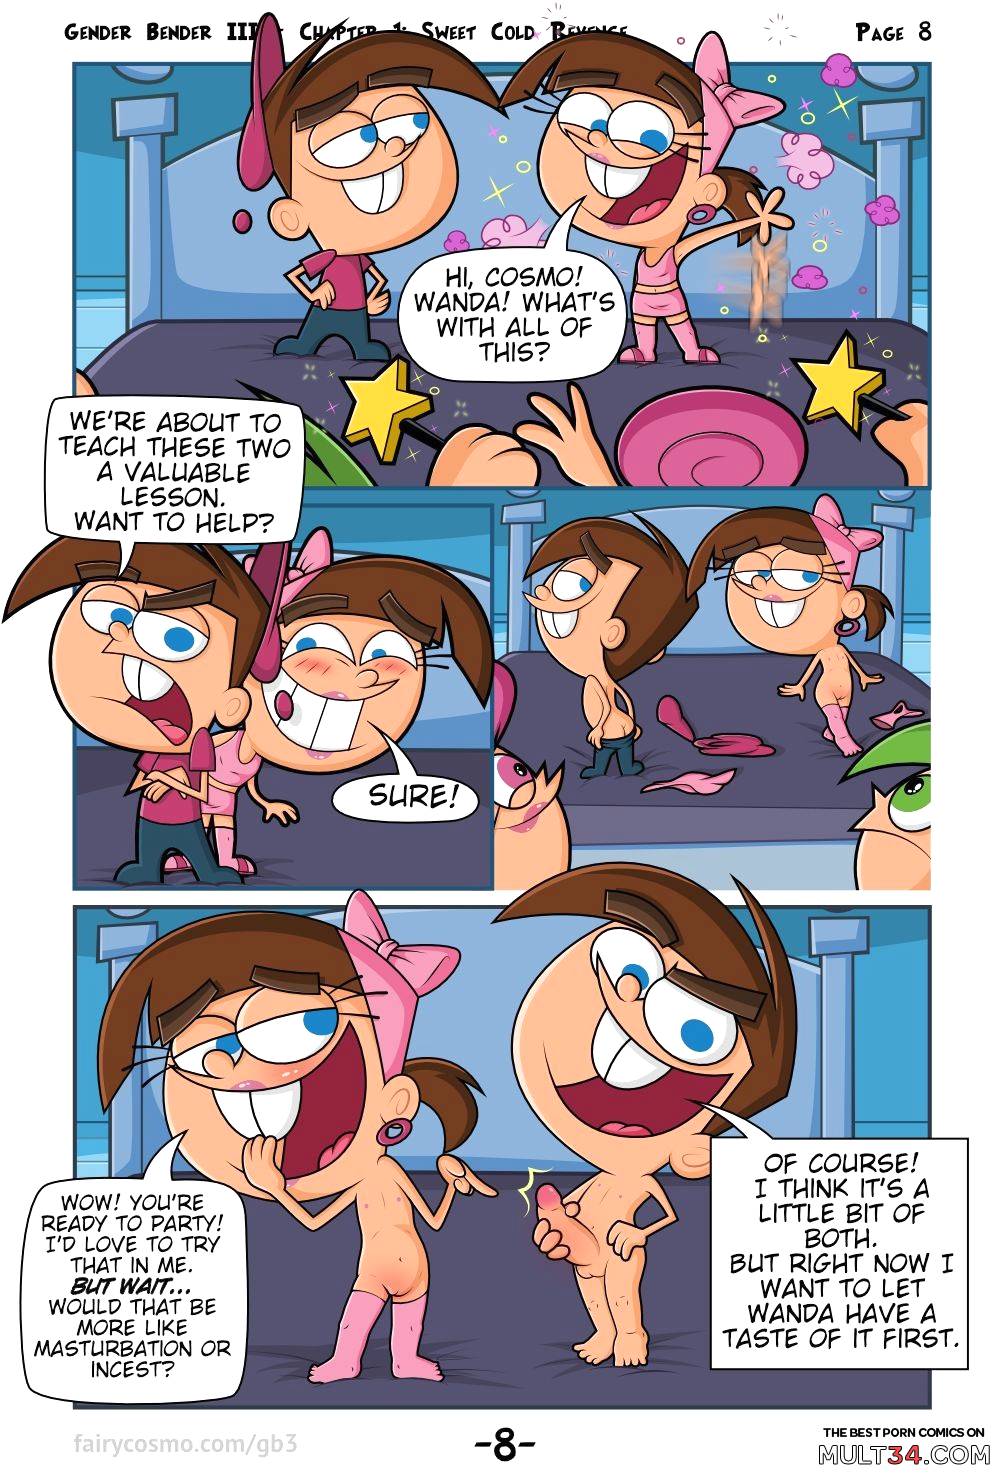 Gender Bender III page 9